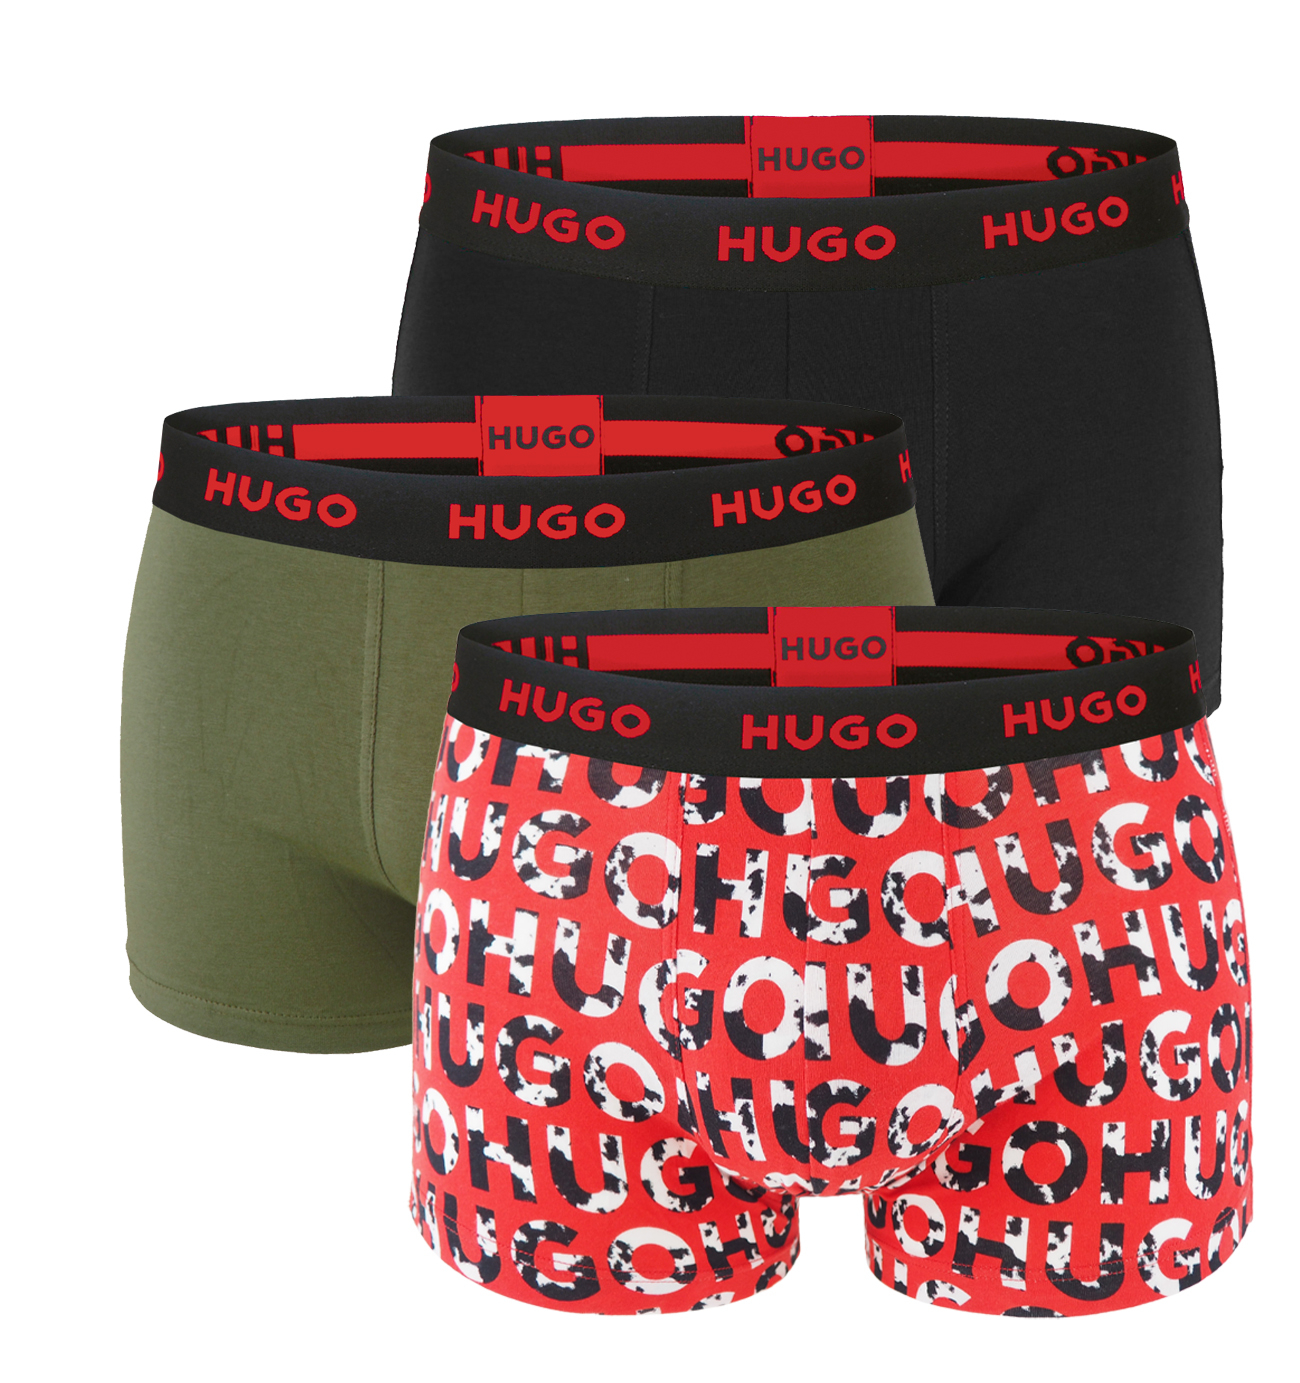 HUGO - boxerky 3PACK cotton stretch black & army green with red logo - limitovaná fashion edícia (HUGO BOSS)